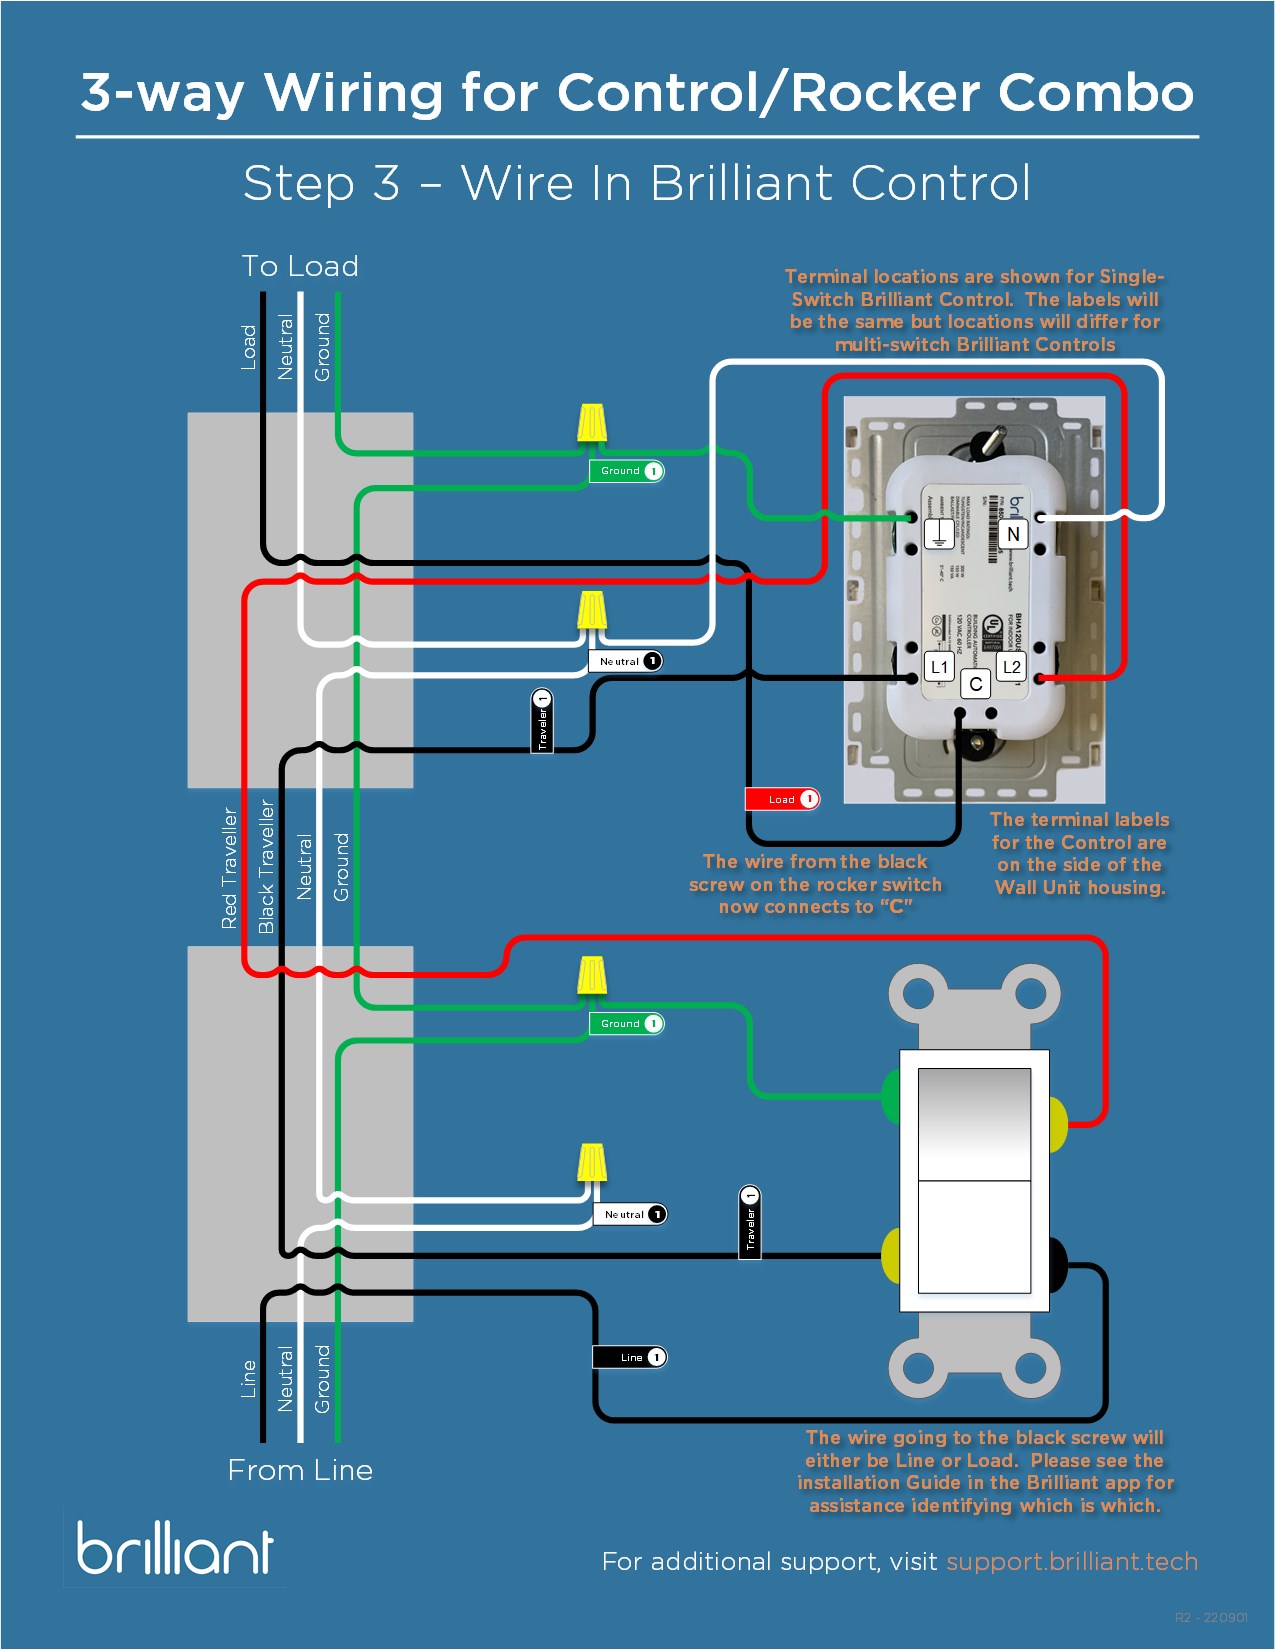 Control_3-way_Wiring_Guide_-_Line-side_Rocker-3.jpg